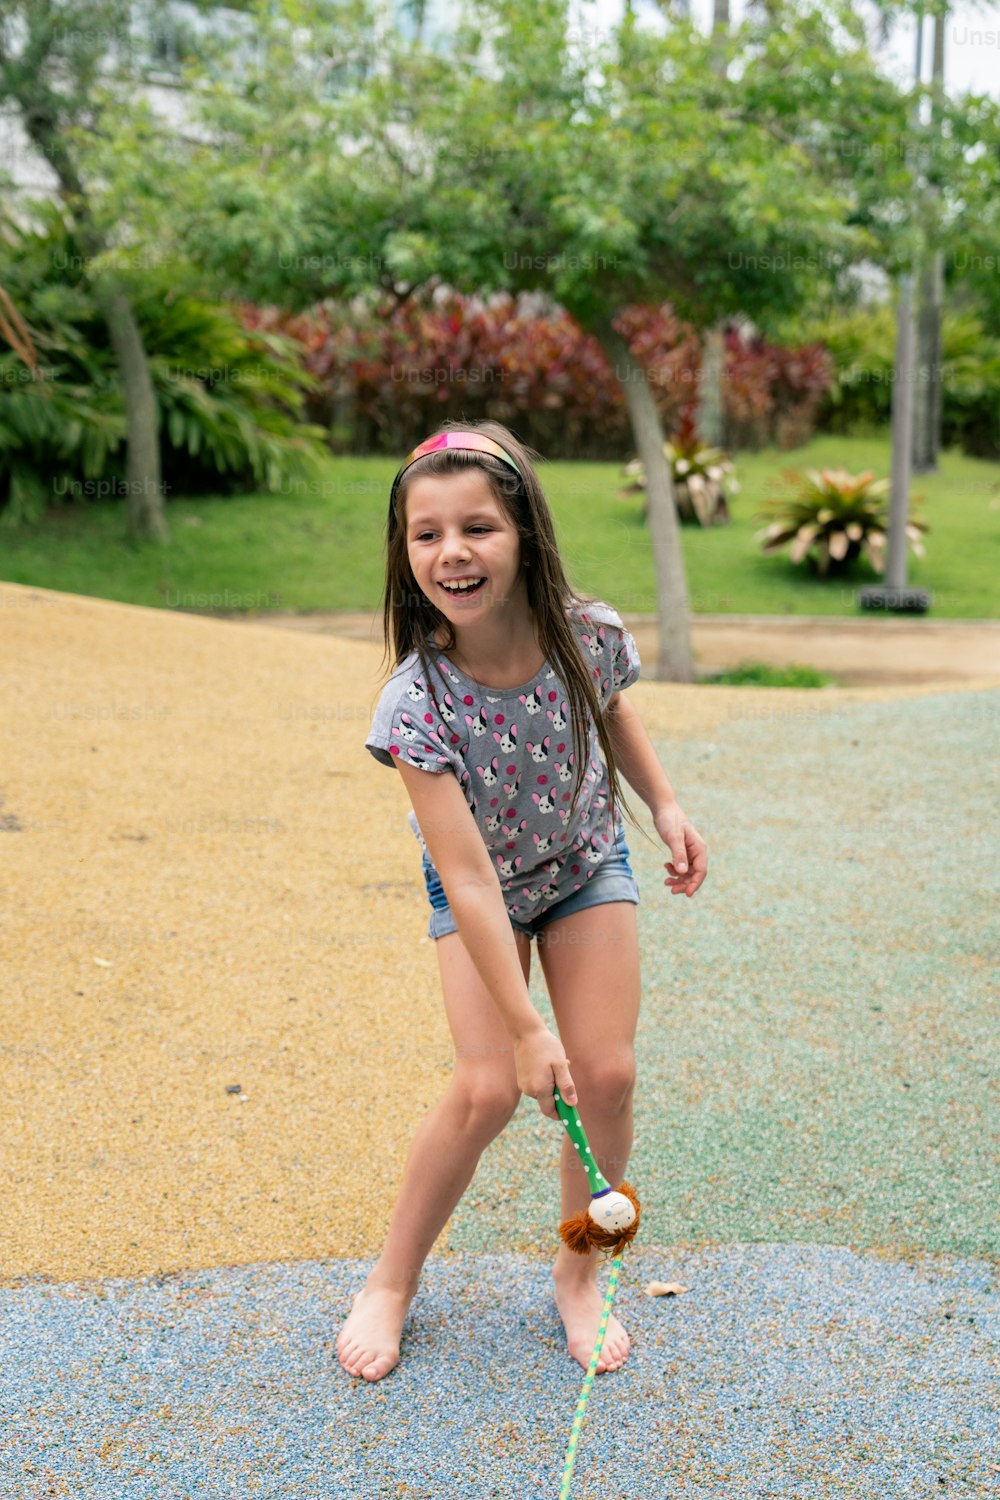 Une jeune fille joue avec un frisbee